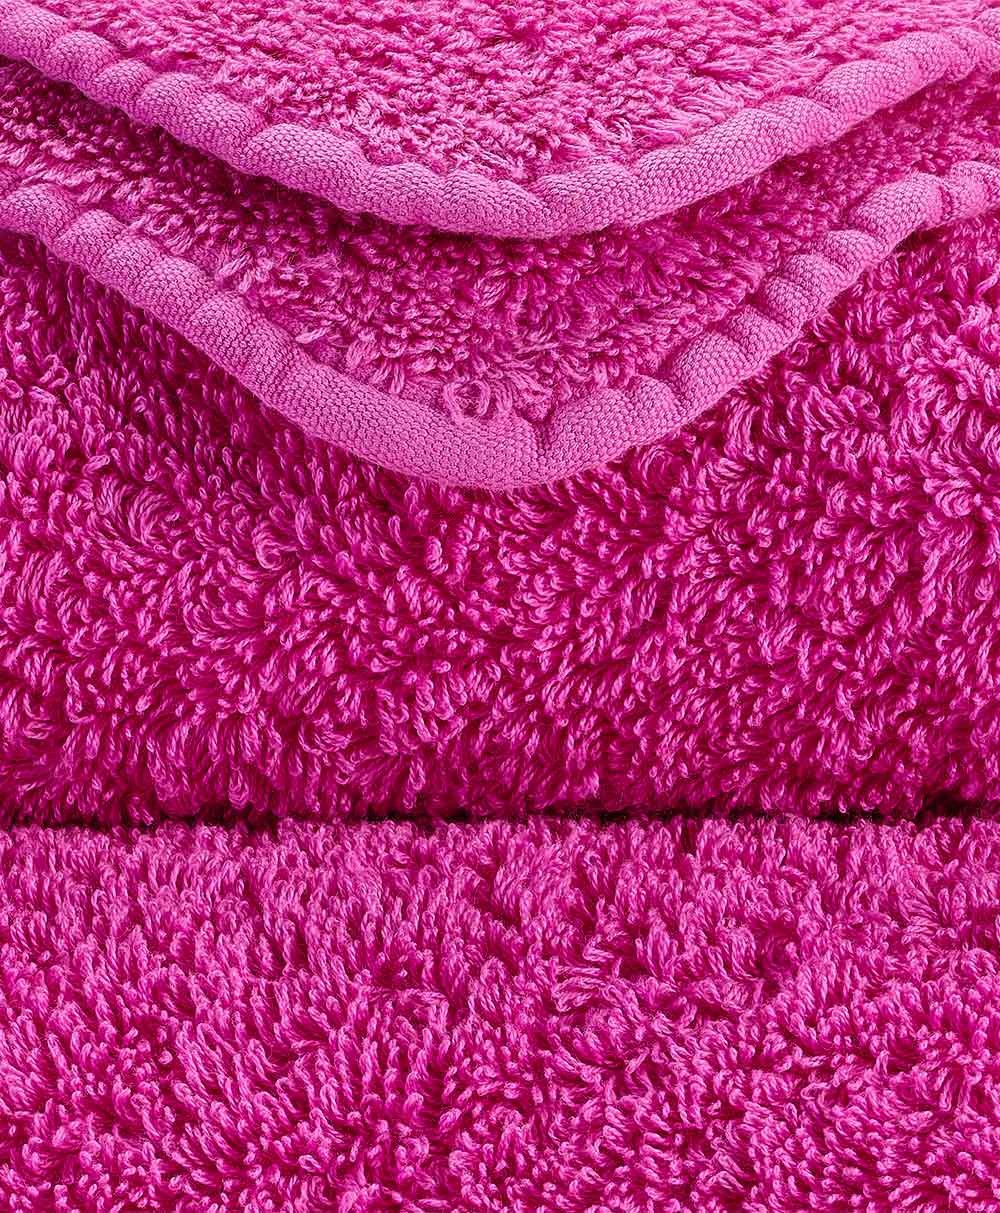 Detailbild des Handtuch Super Pile aus ägyptischer Baumwolle der Marke Abyss & Habidecor im RAUM concept store